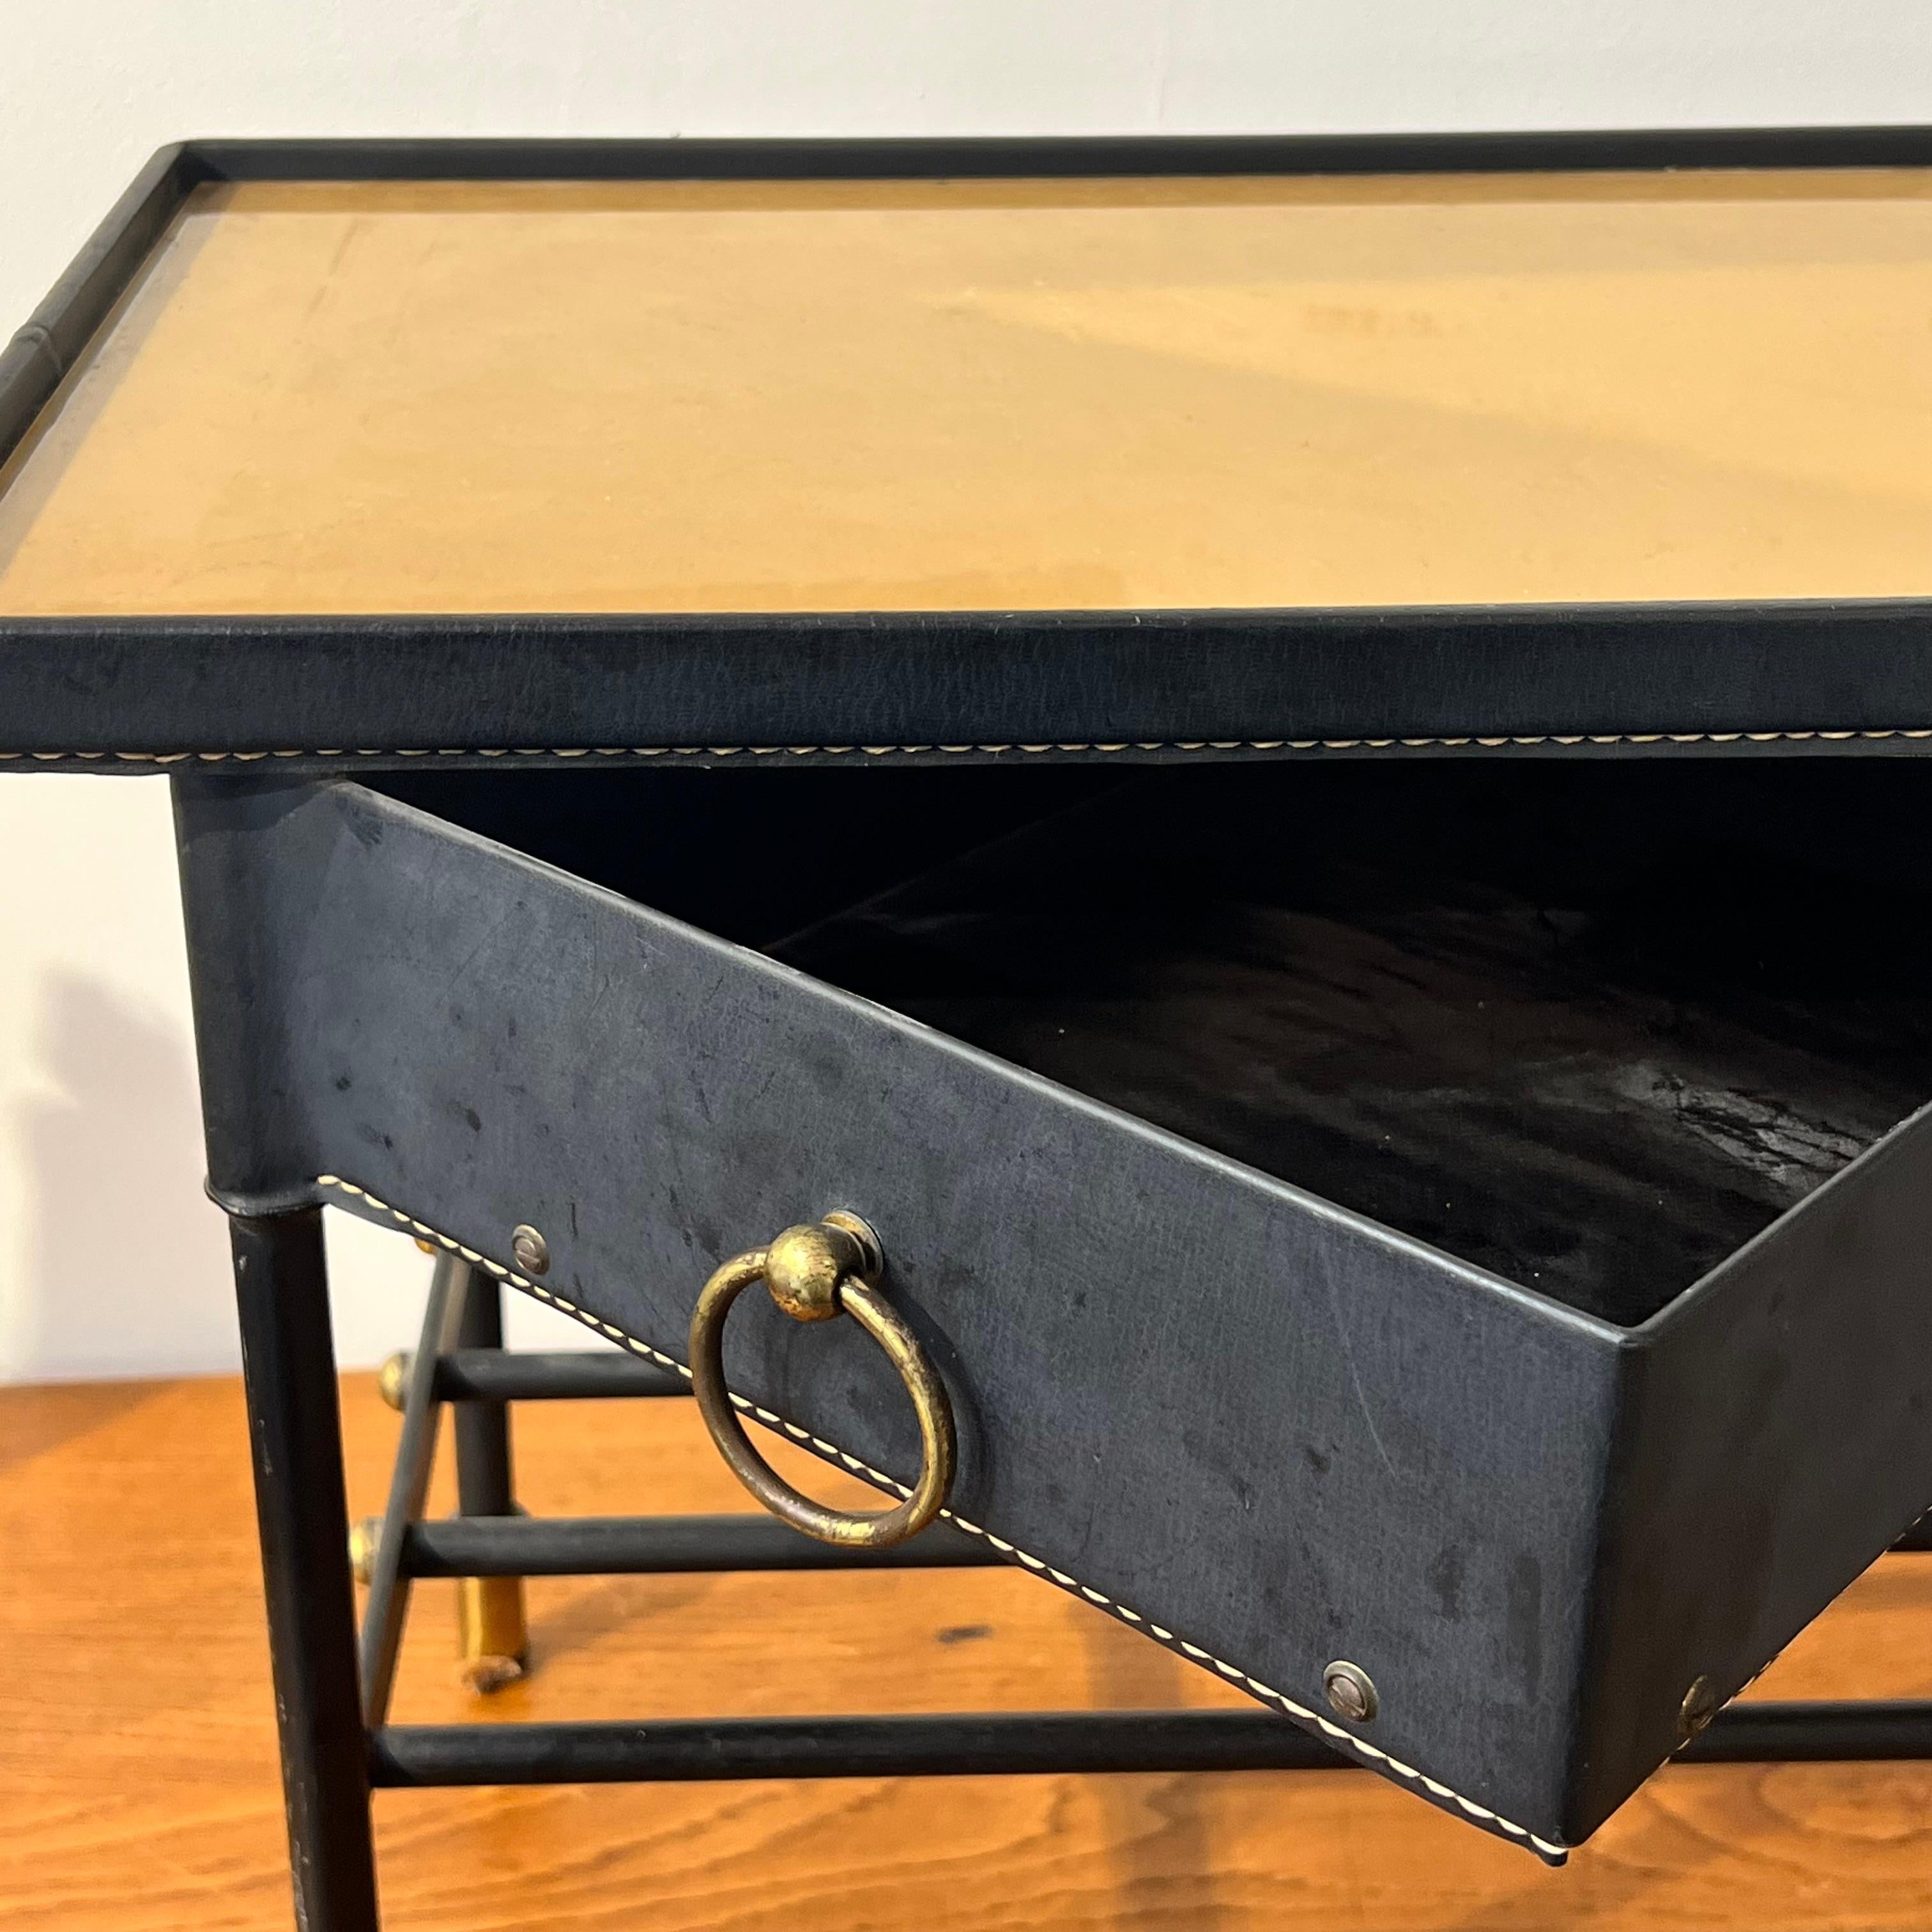 Table d'appoint Jacques Adnet, métal cuir et verre

Très bon état avec cuir d'origine

Vers les années 1950

Eleg est connu pour ses meubles très élégants